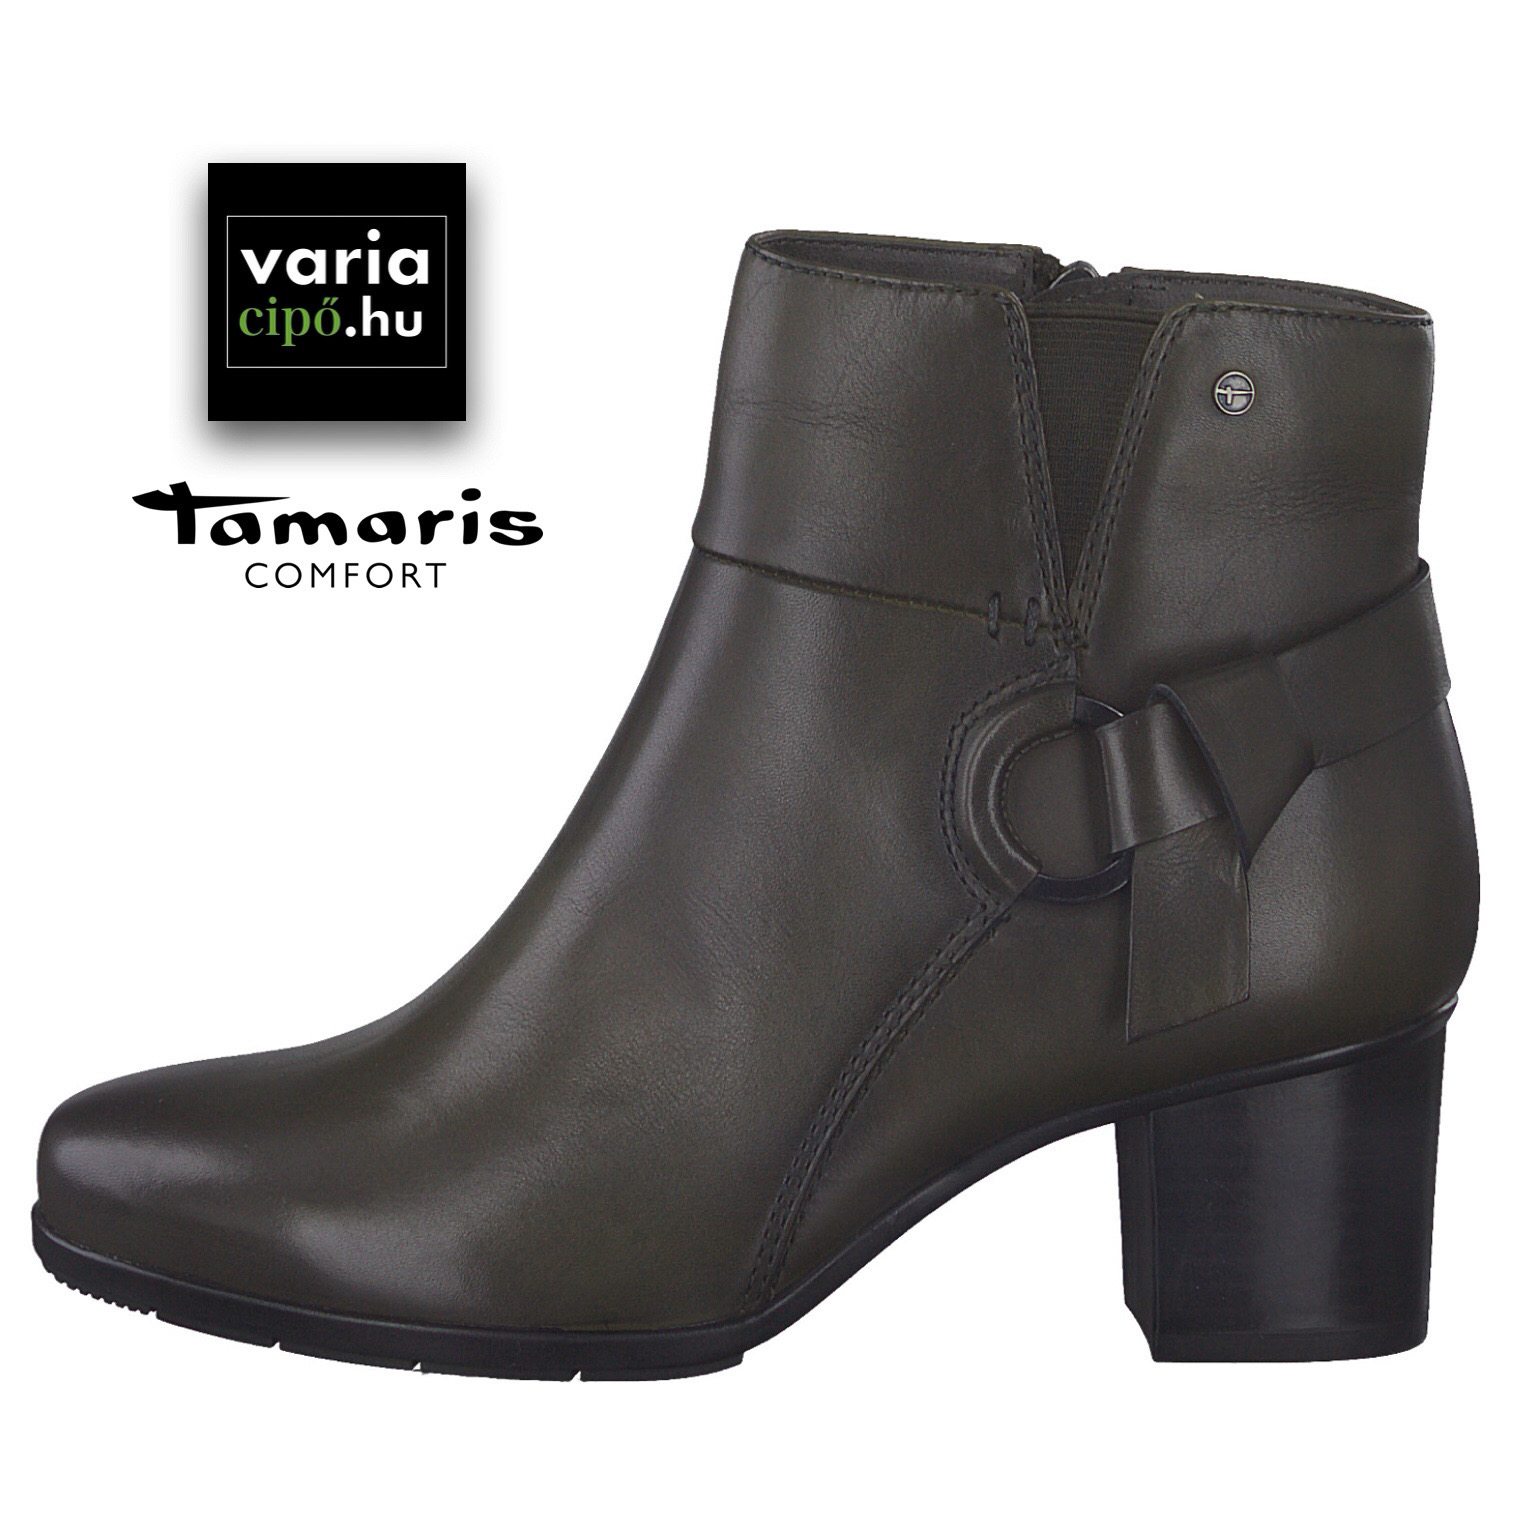 Tamaris Comfort bőr bokacsizma, 8-85303-29 707 khaki